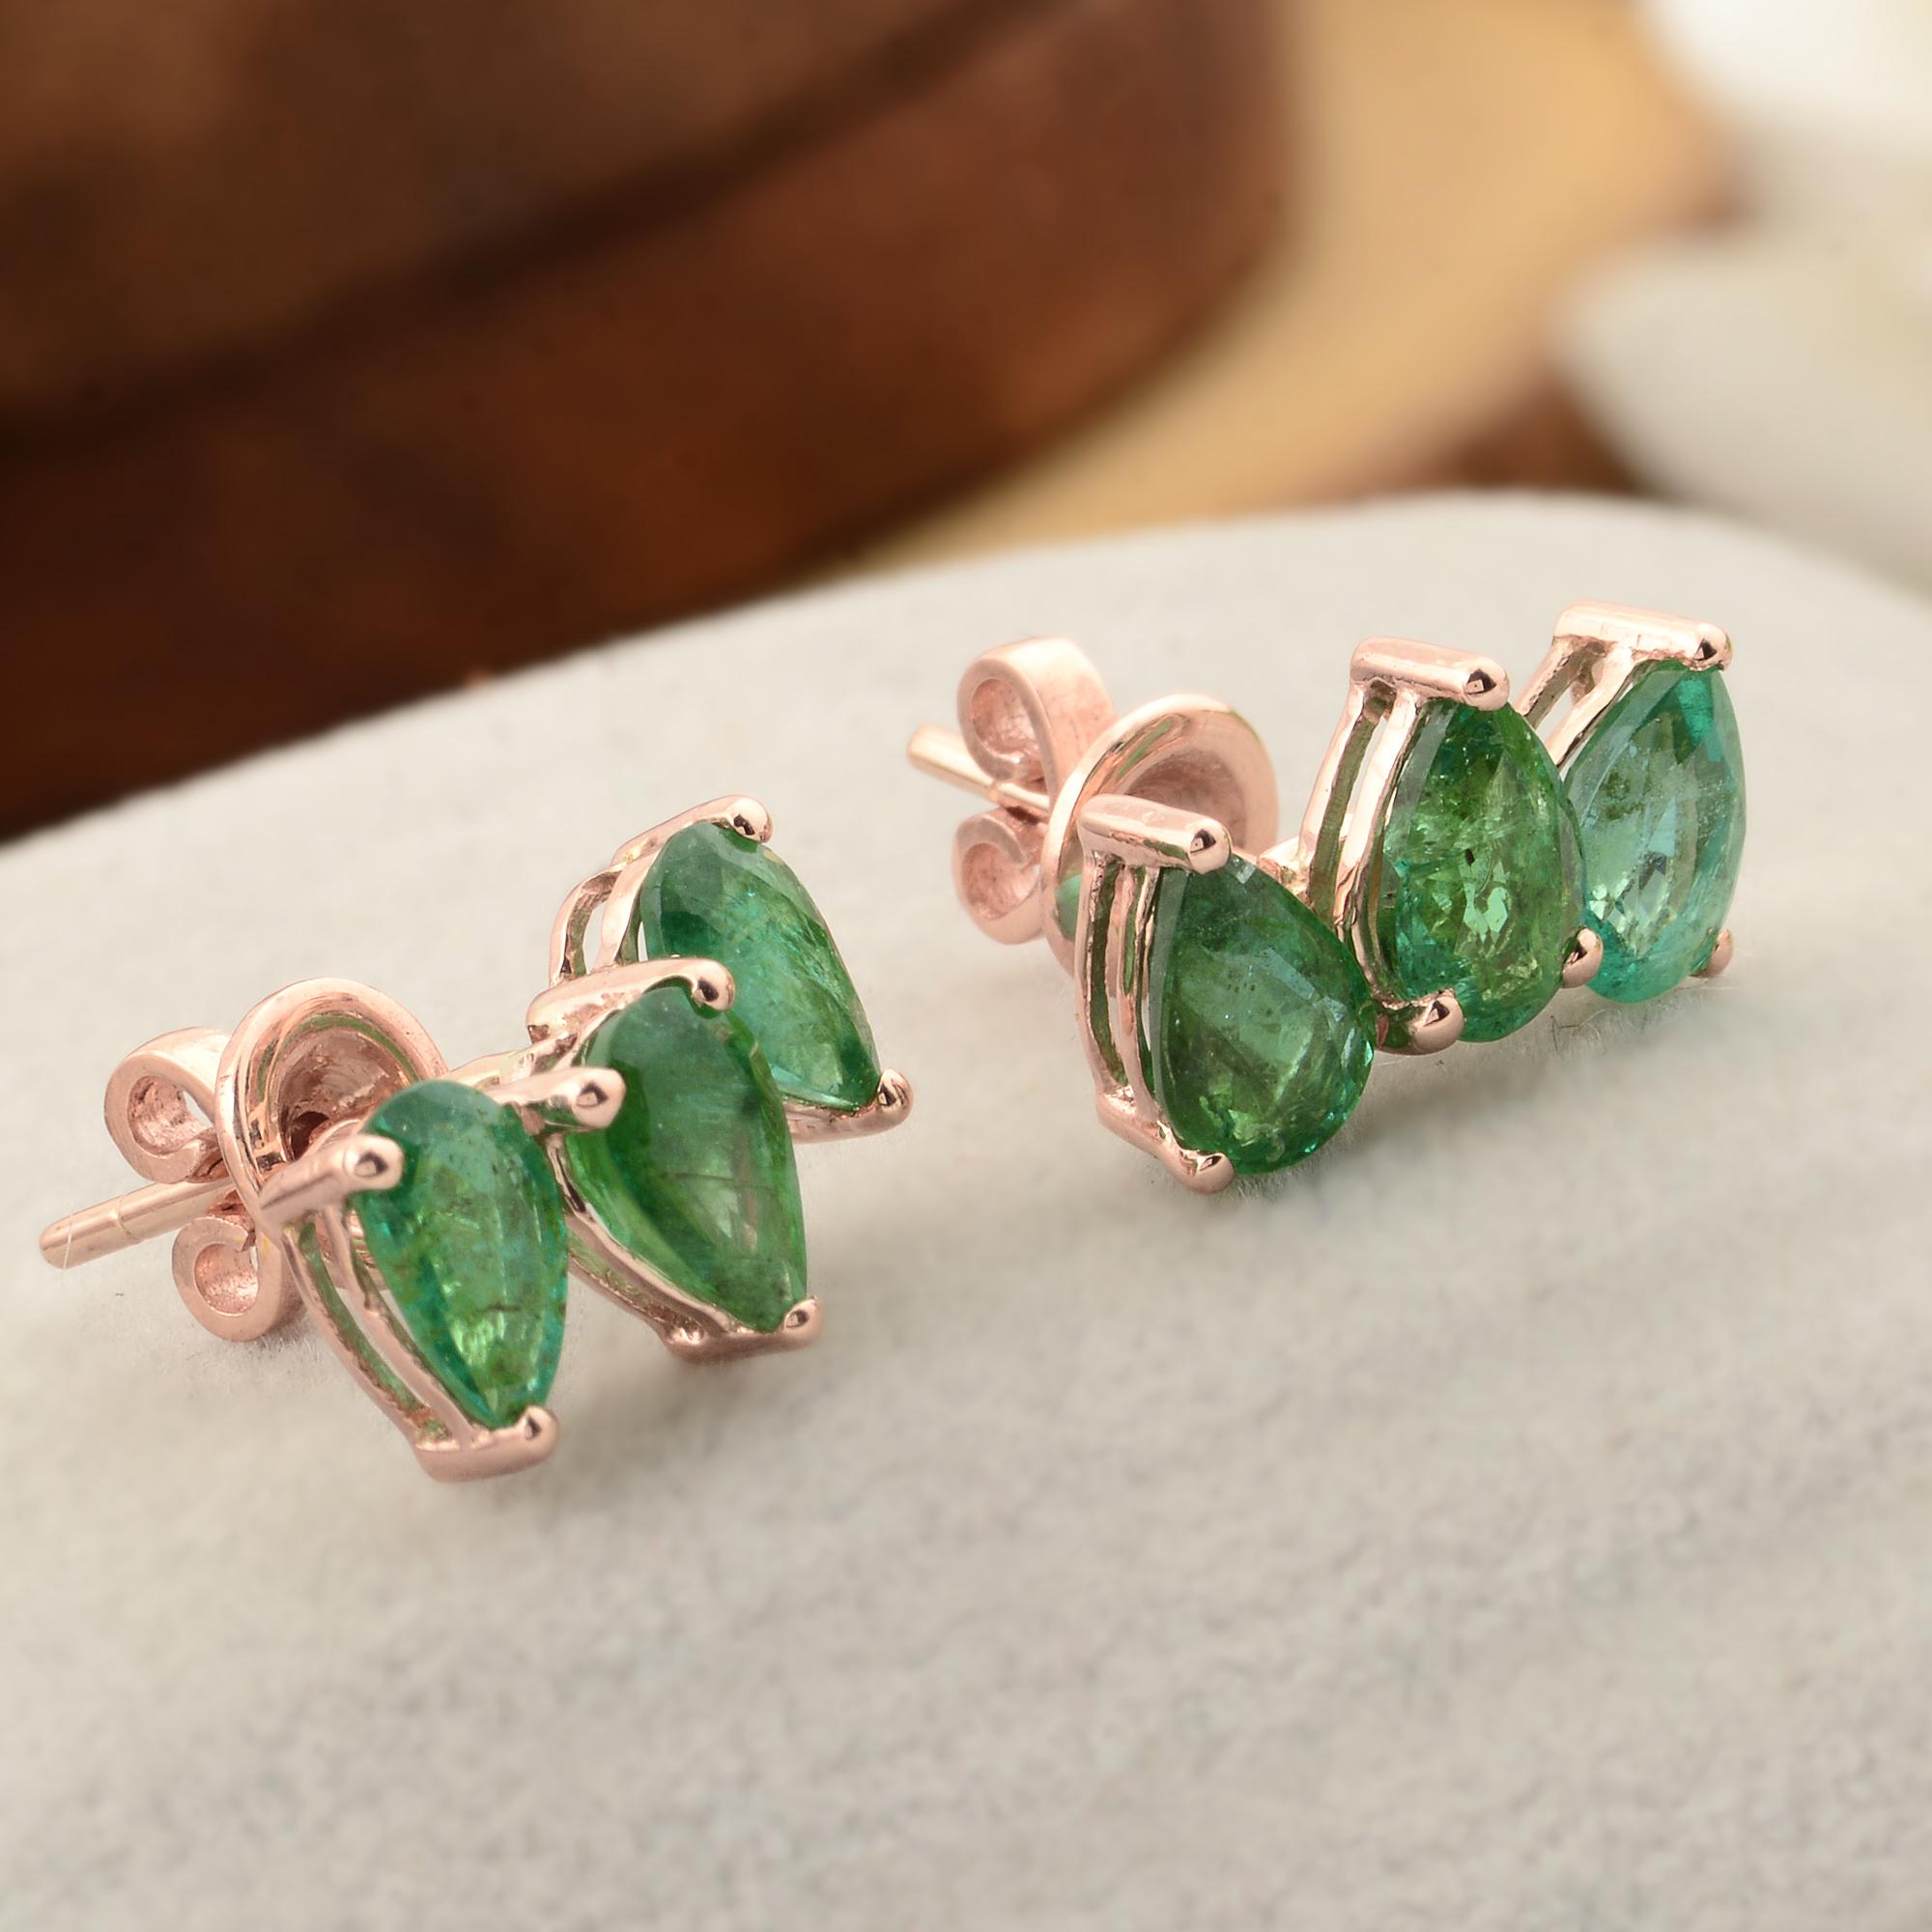 Pear Cut 2.34 Carat Pear Shape Zambian Emerald Stud Earrings 10 Karat Rose Gold Jewelry For Sale